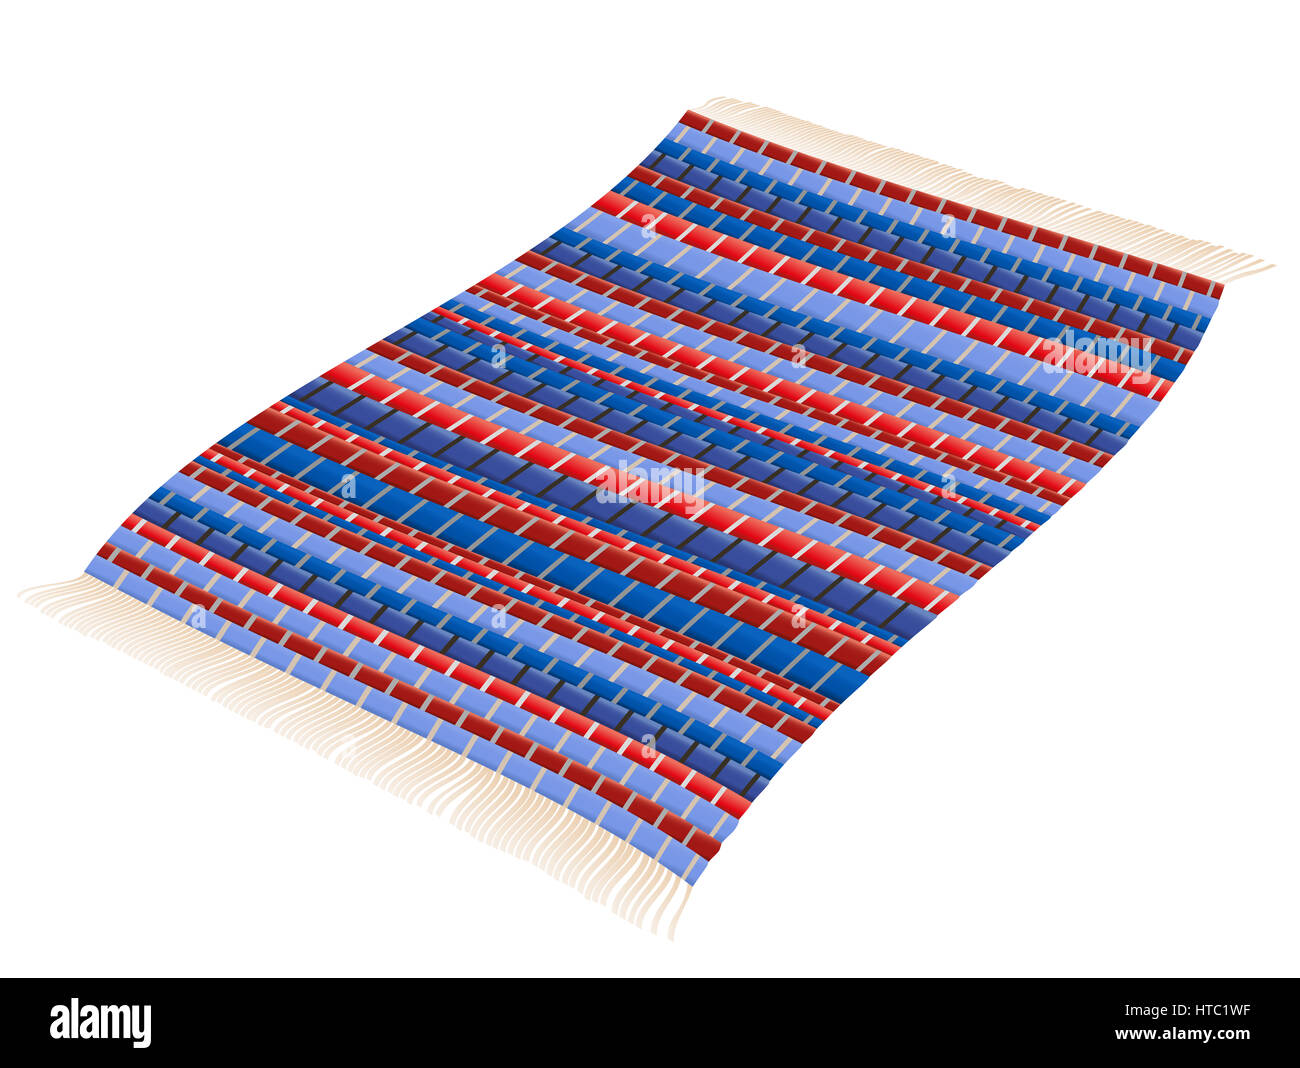 Flickenteppich - rot und blau gewebt Weinlese-Patchwork Matte fliegen wie ein fliegender Teppich. Isolierte Darstellung auf weißem Hintergrund. Stockfoto